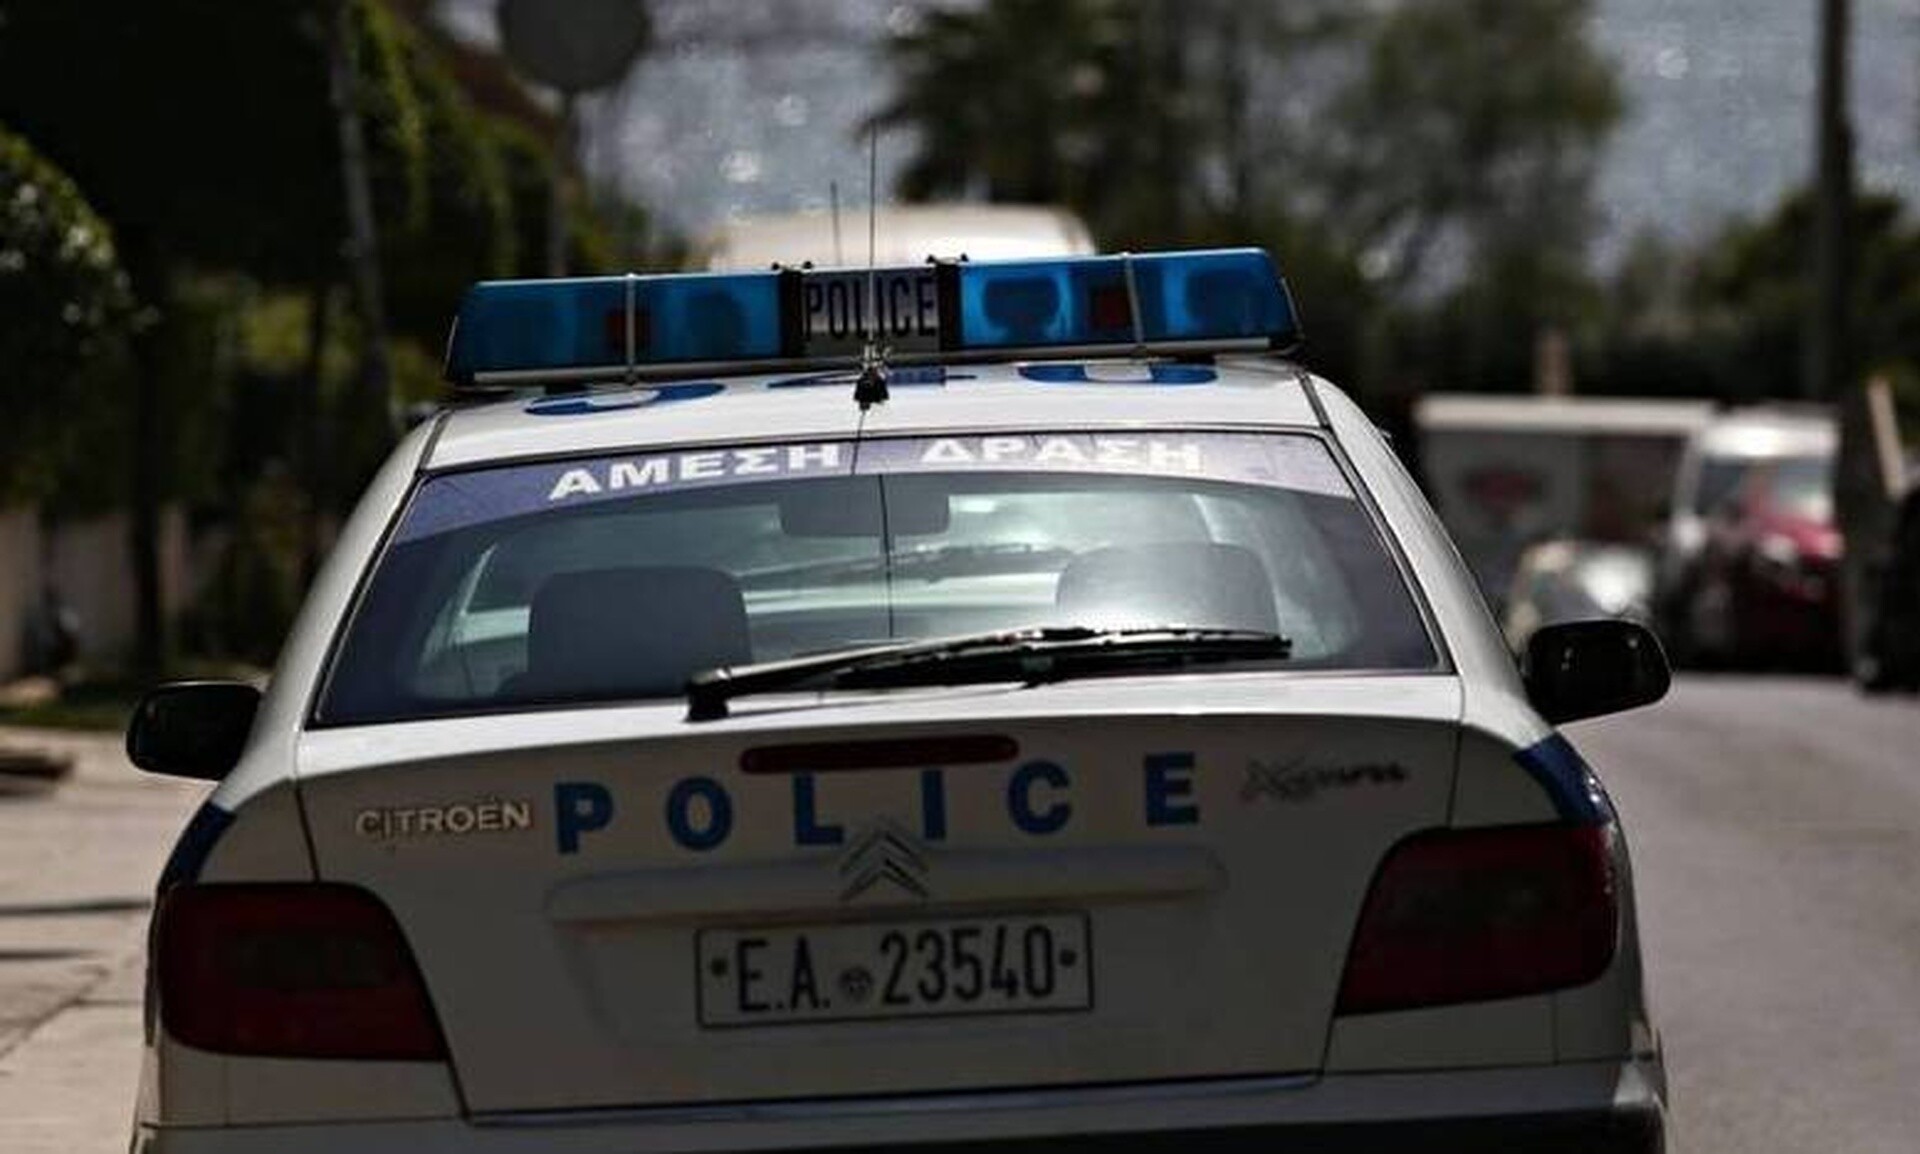 Ωραιόκαστρο: Συνελήφθη 49χρονη σε κατάσταση μέθης για έκθεση ανηλίκου